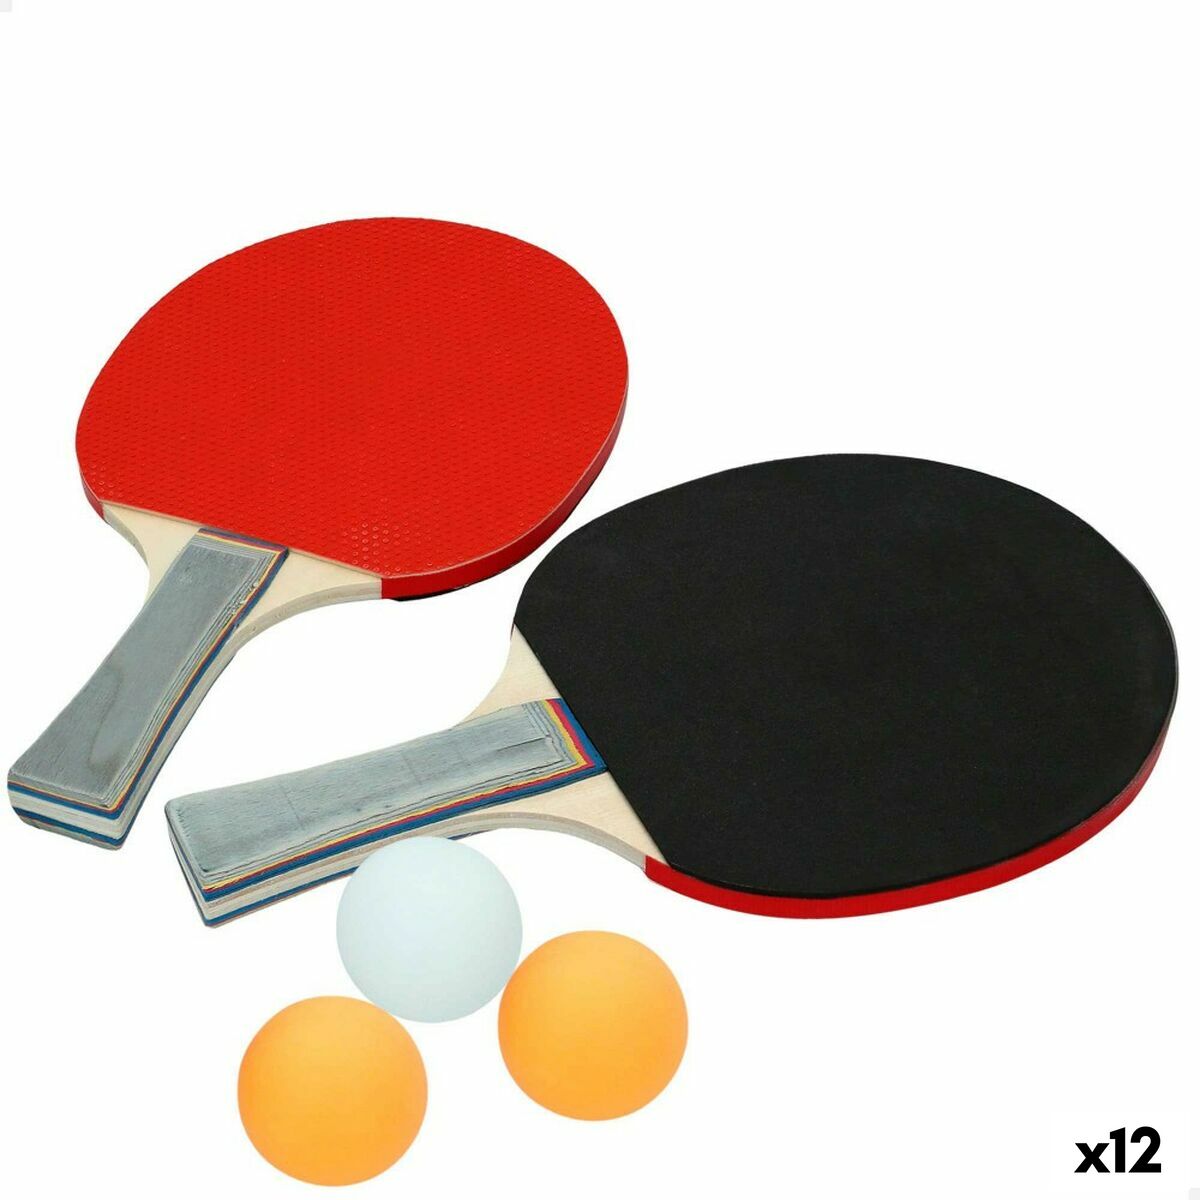 Ping Pong Set Aktive 14,5 x 25 x 0,9 cm (12 Units)